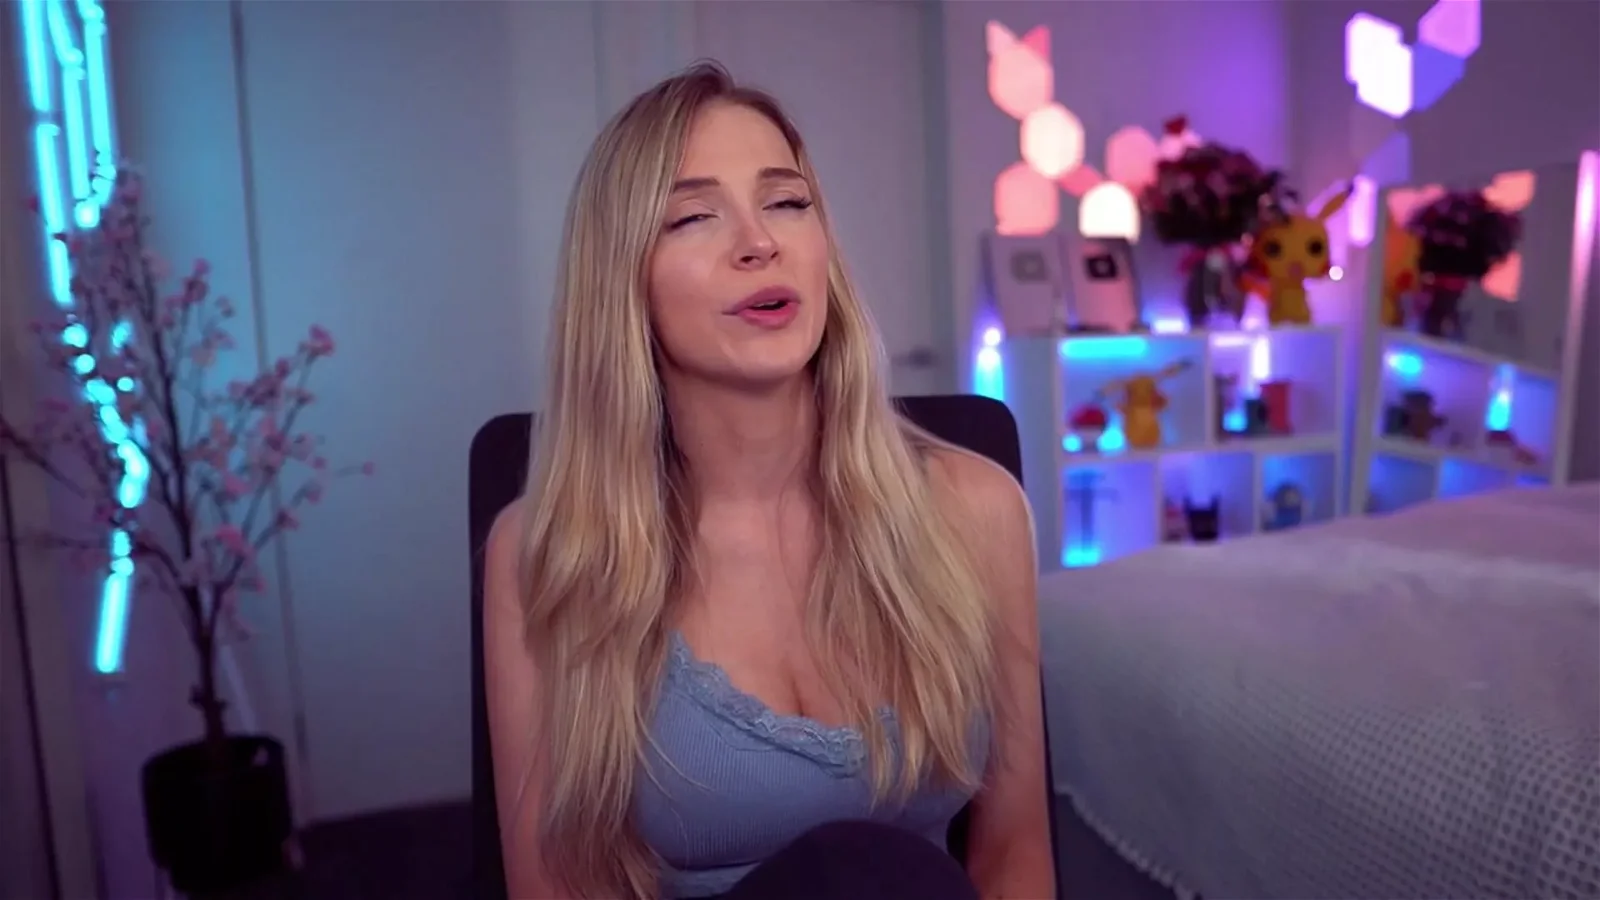 Bebahan AKA Hannah Hot Youtuber Playing Freshwomen Sex Game Streaming Video 